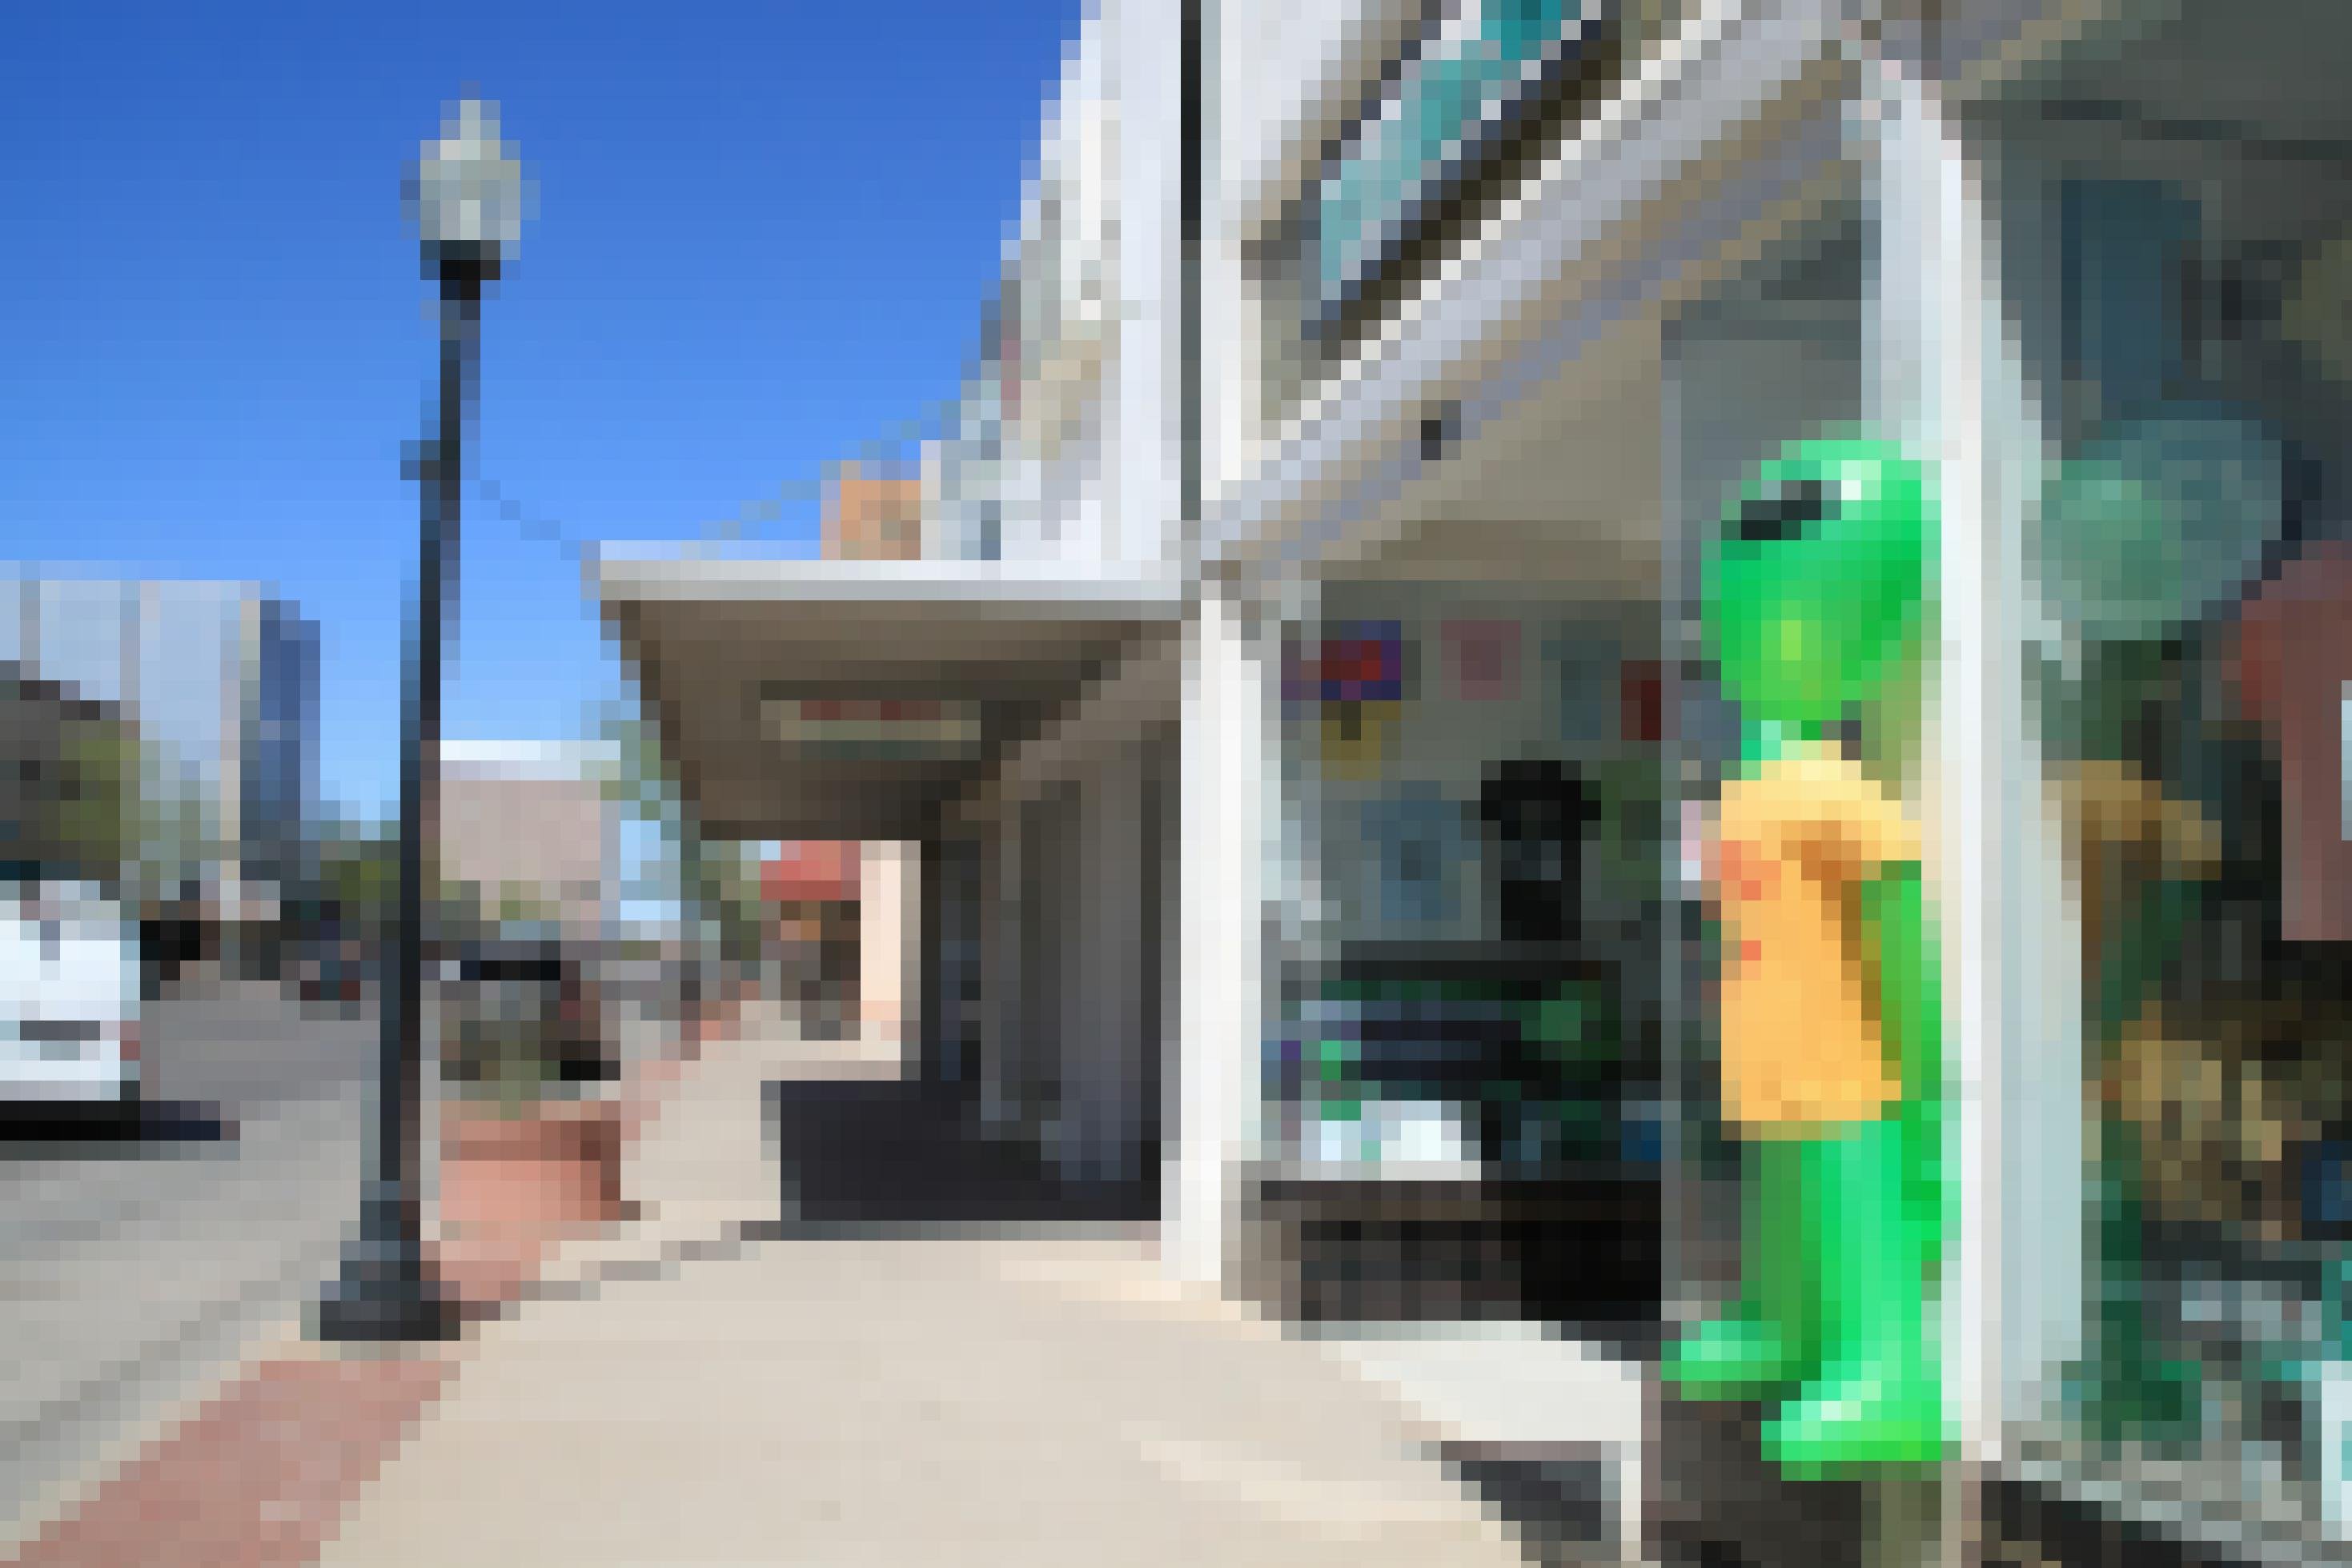 Auf einer Einkaufsstraße steht ein aufblasbarer Außerirdischer vor einem Geschäft